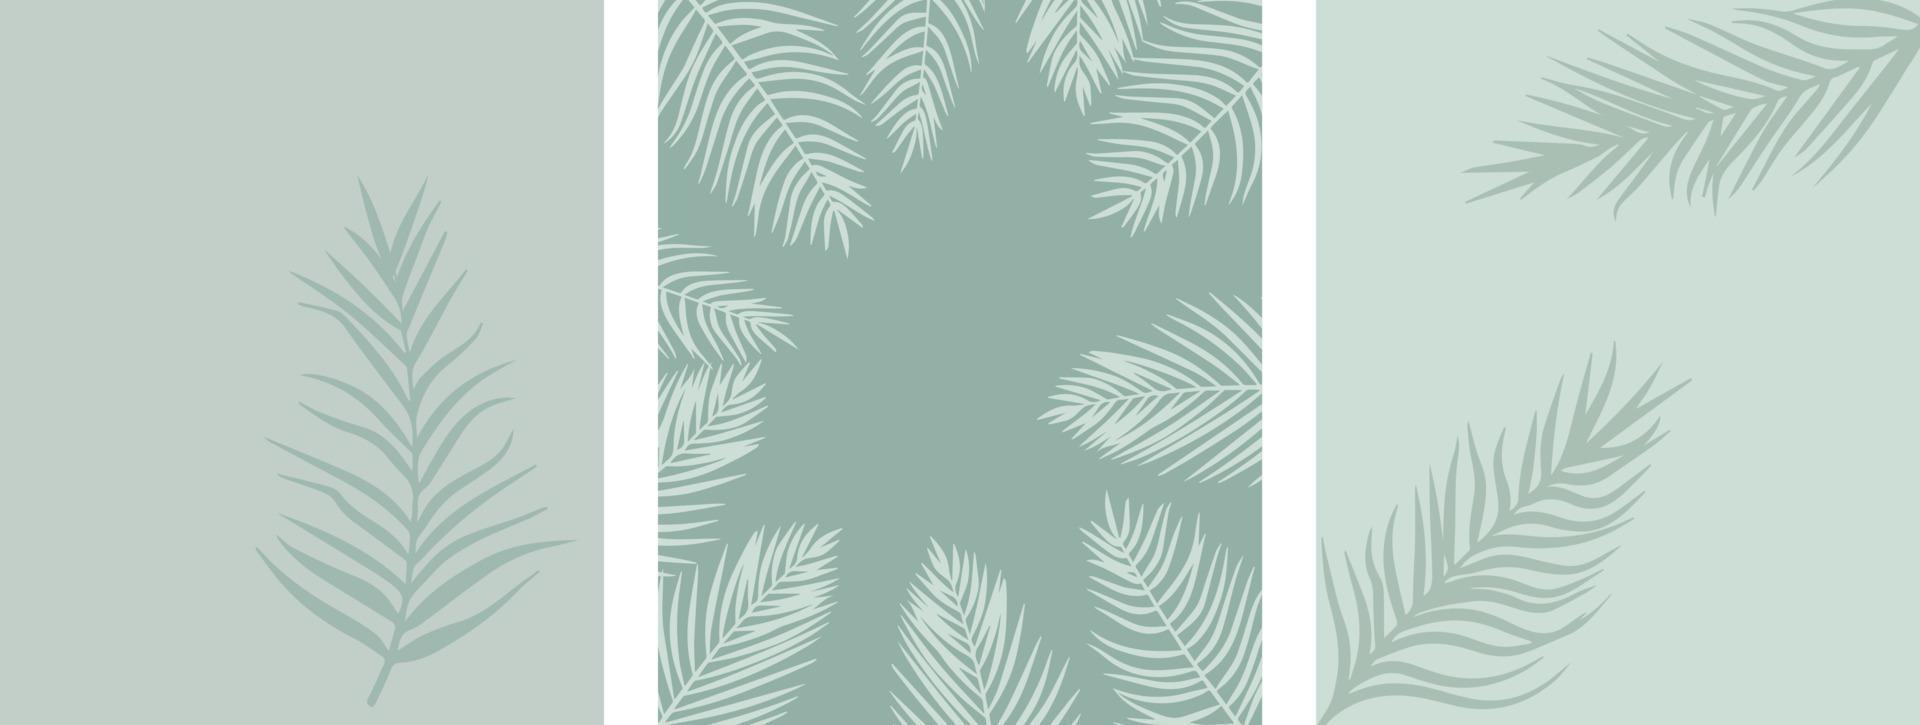 arrière-plans exotiques d'été avec des branches de palmier vecteur